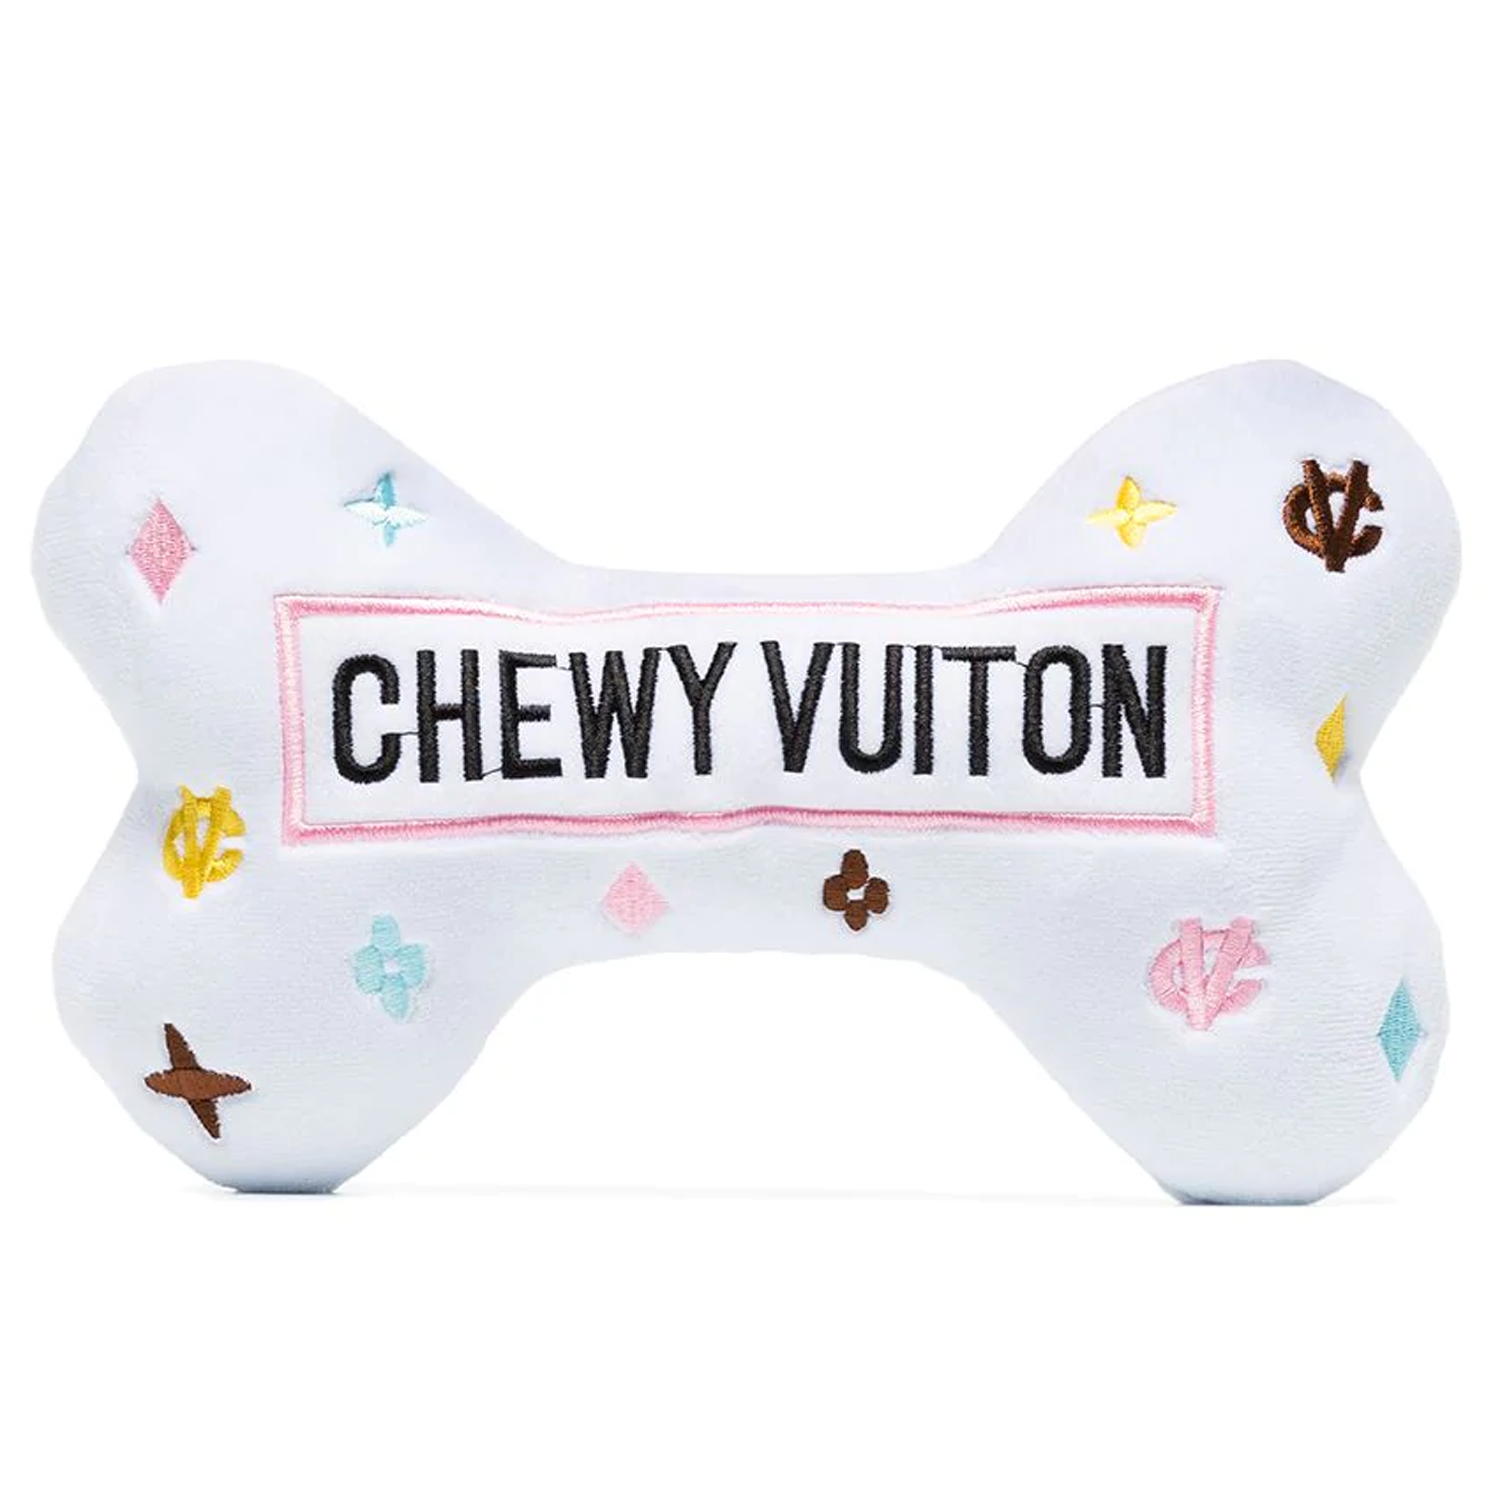 CUTE PUPPY TOYS! Alexander Muttqueen Designer Pink Shoe Dog Toy